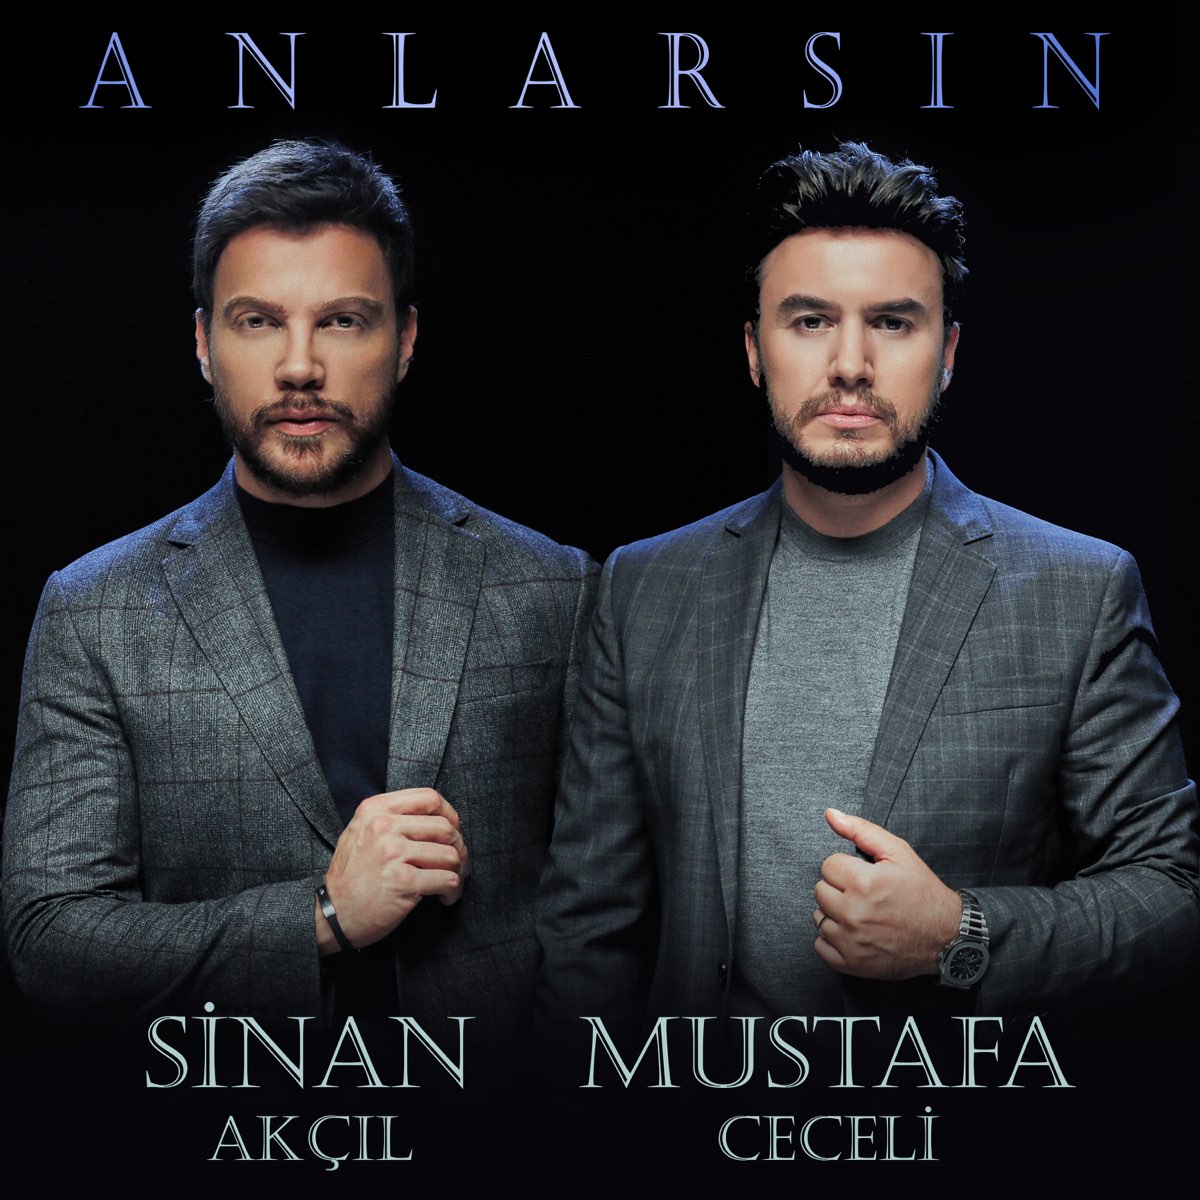 Anlarsın - Single - Album by Mustafa Ceceli & Sinan Akçıl - Apple Music